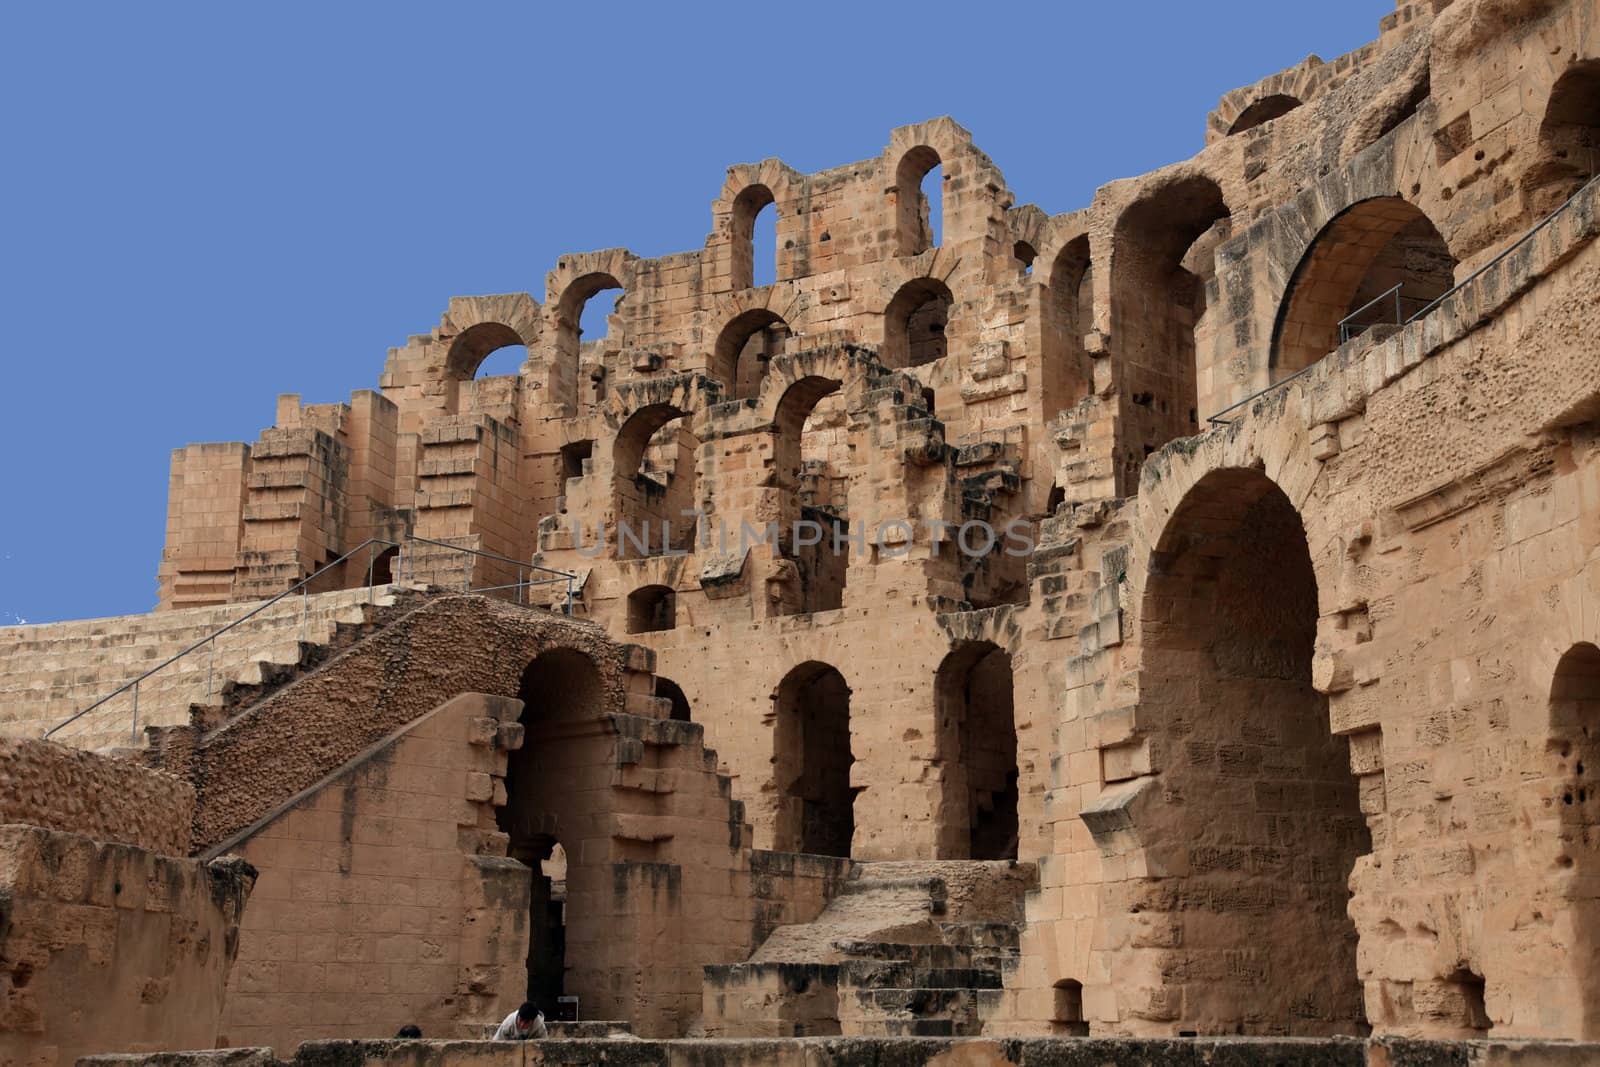 The amphitheater in El-Jem, Tunisia by atlas